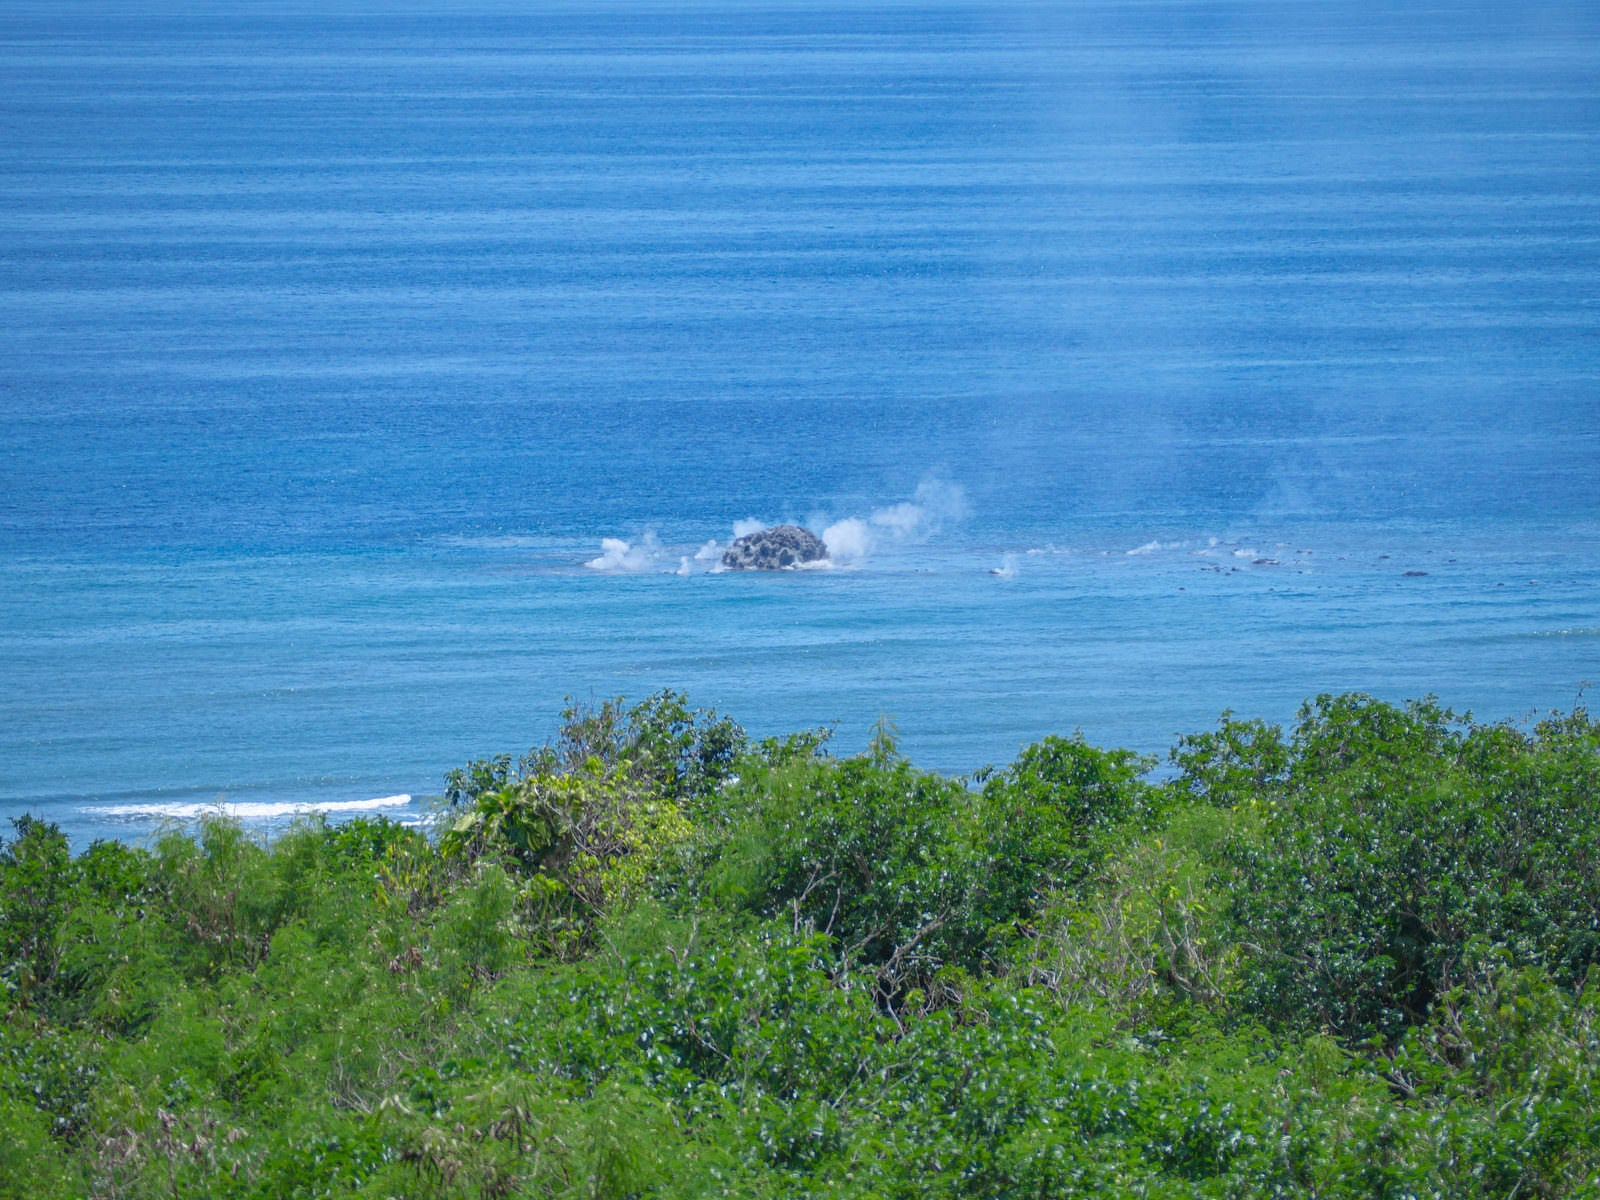 「翁浜沖の海上に見える黒い噴煙」の写真